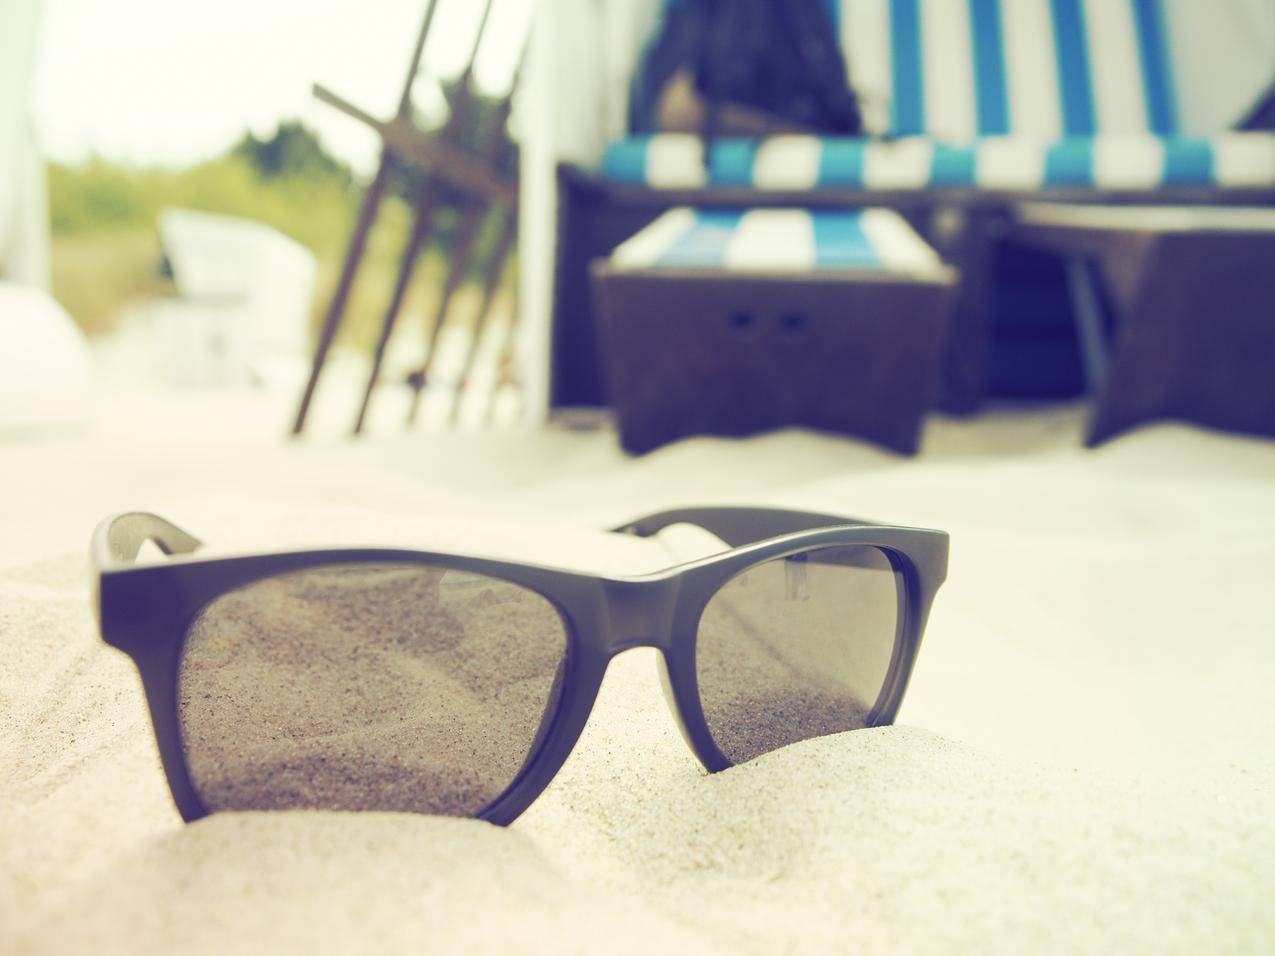 cc0可商用时装照片,沙滩,太阳镜,假期